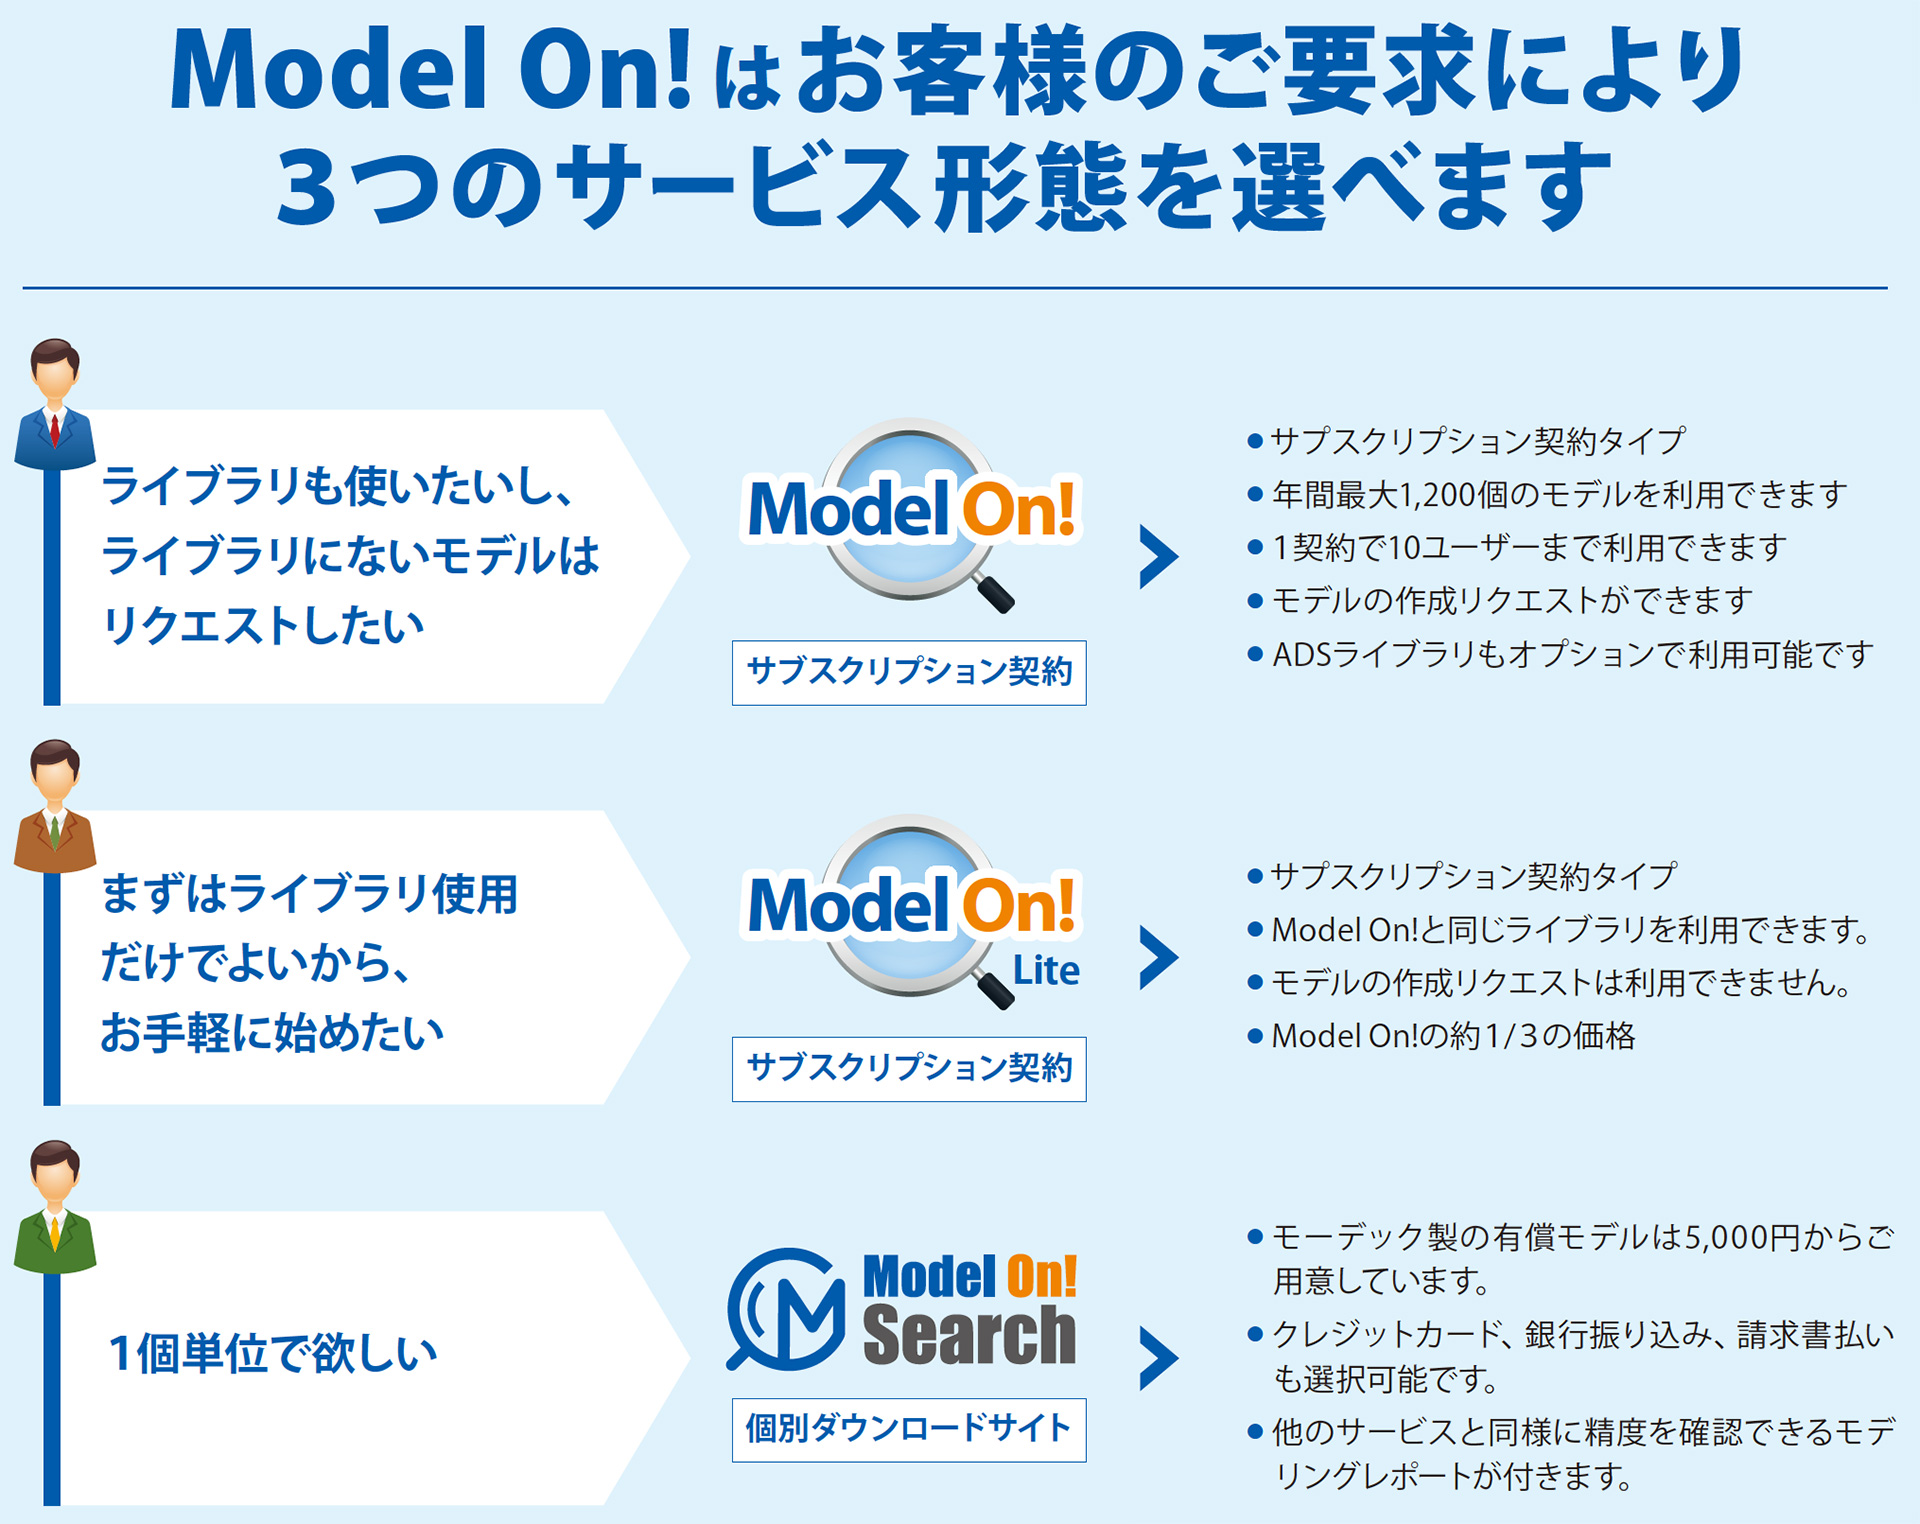 Model On! はお客様のご要求により ３つのサービス形態を選べます